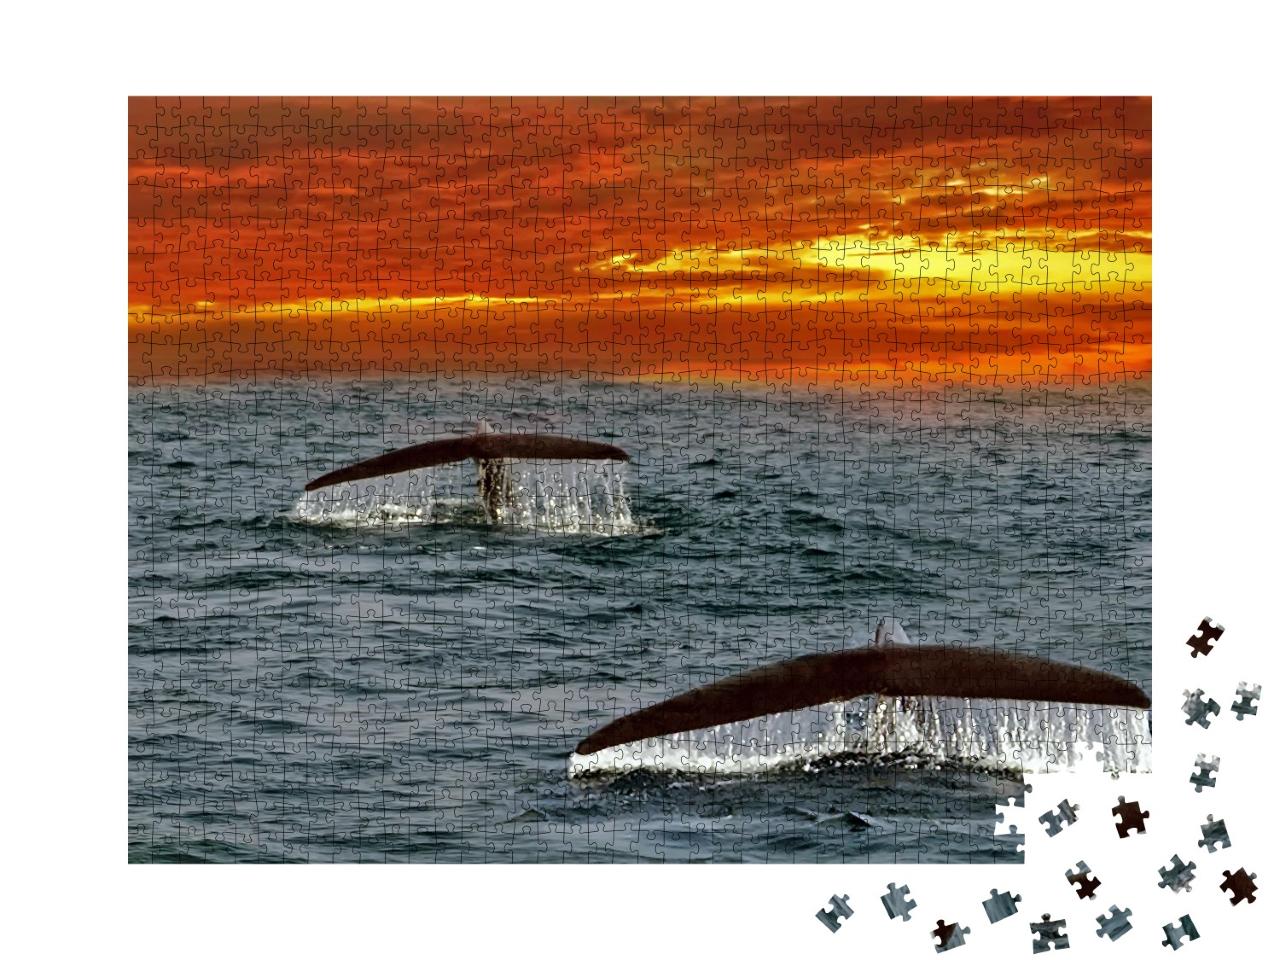 Puzzle de 1000 pièces « Ailerons de baleines bleues dans l'océan Indien, Sri Lanka »